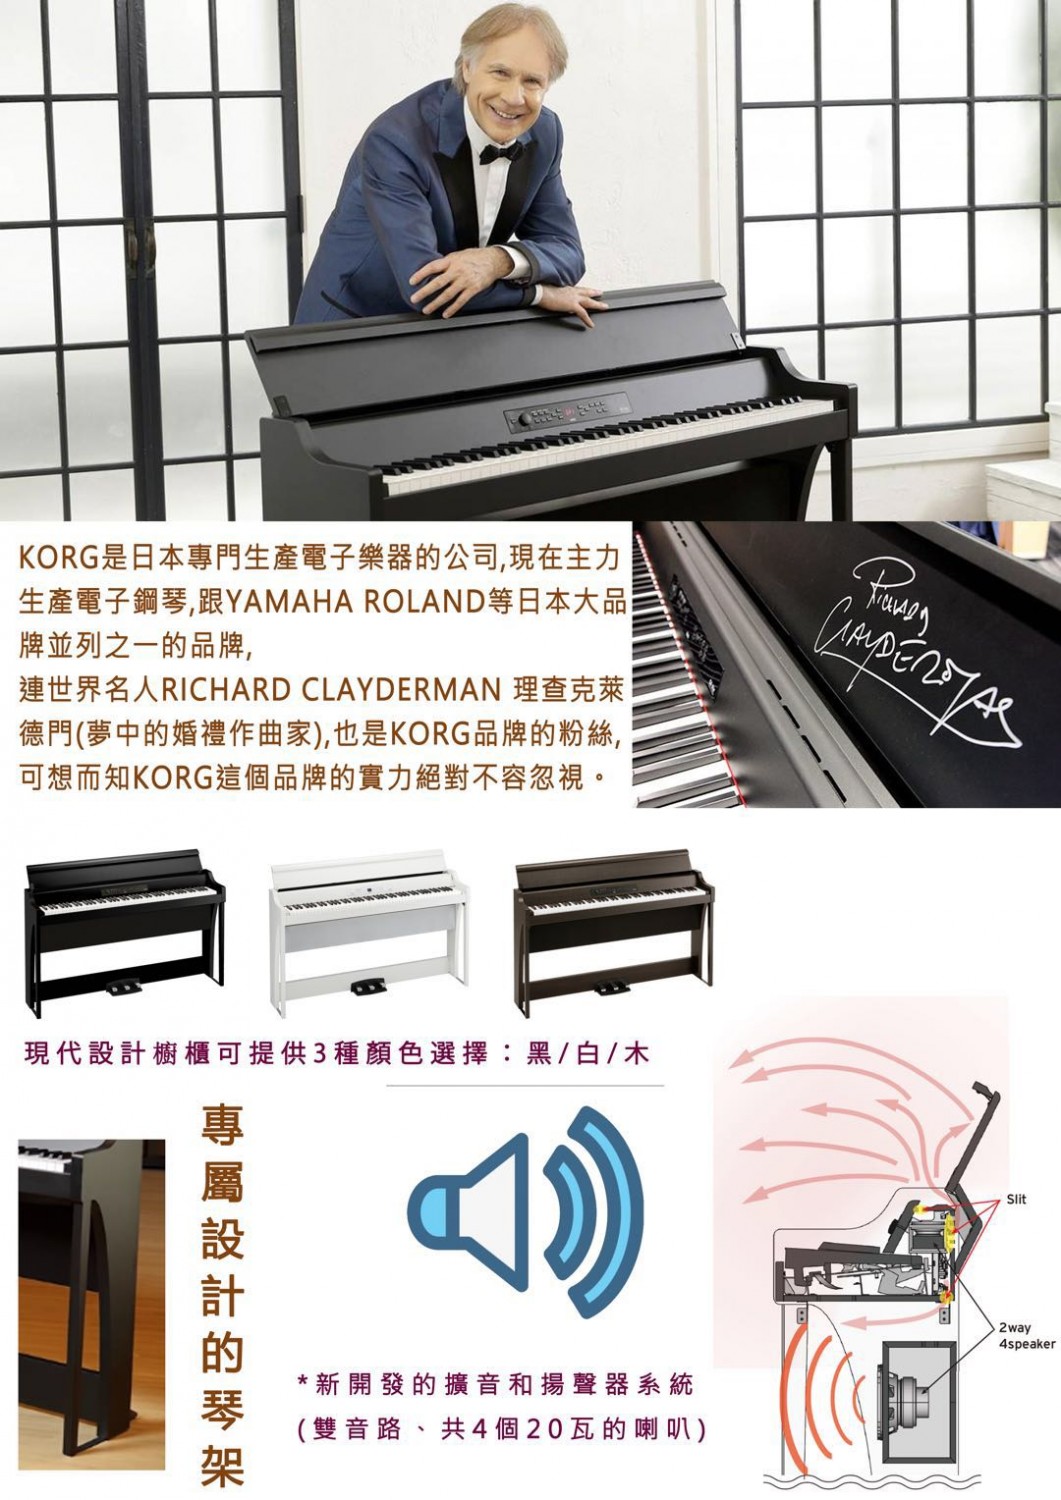 Korg G1 Air 高端電鋼琴評測 最新型號 詩韻鋼琴城 澳門 香港 鋼琴 回收 維修 調音